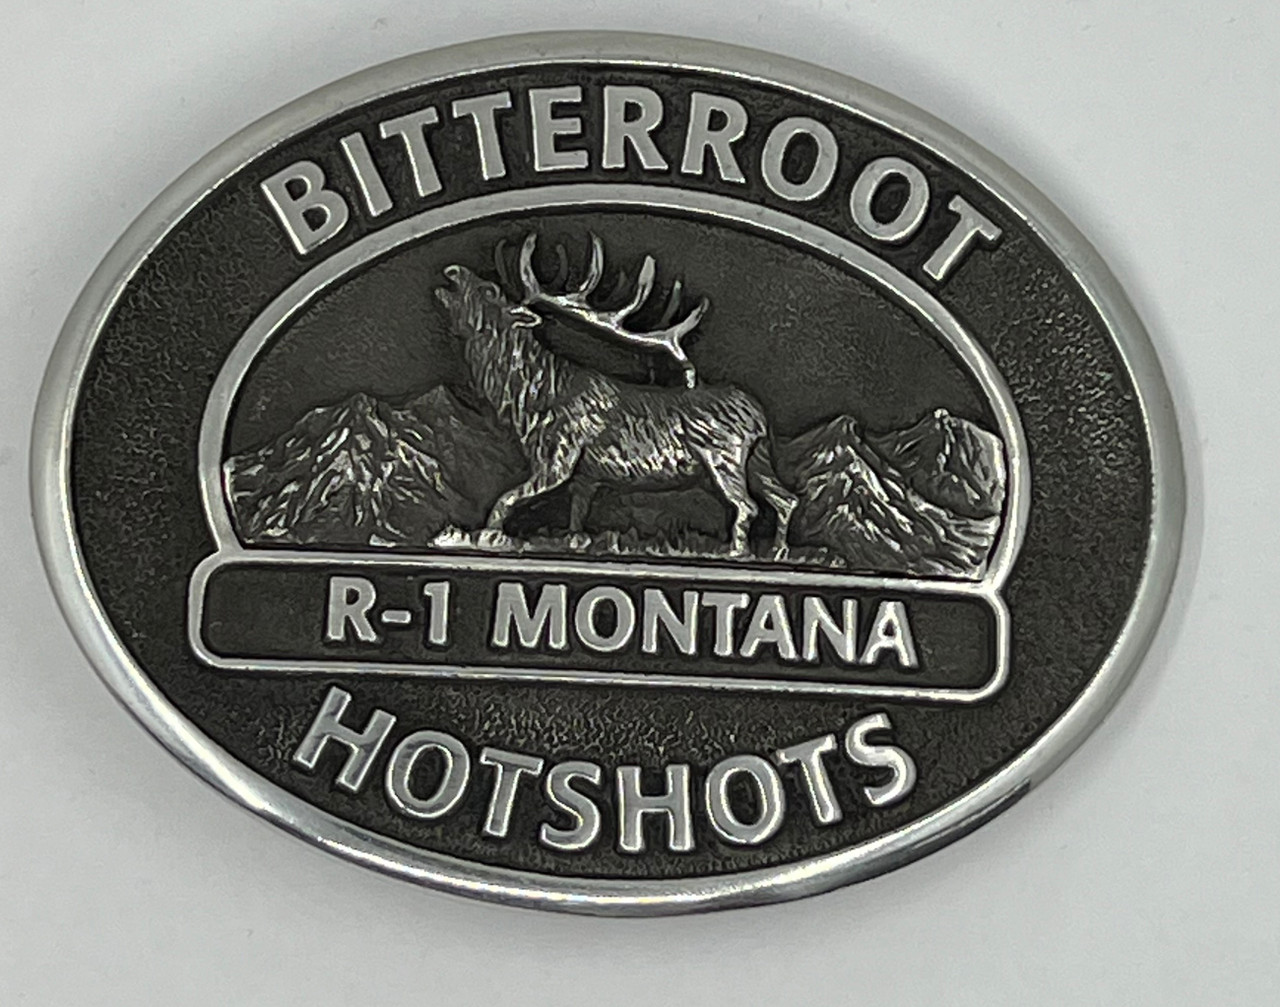 Bitterroot Hotshots R-1 Montana Buckle (RESTRICTED)